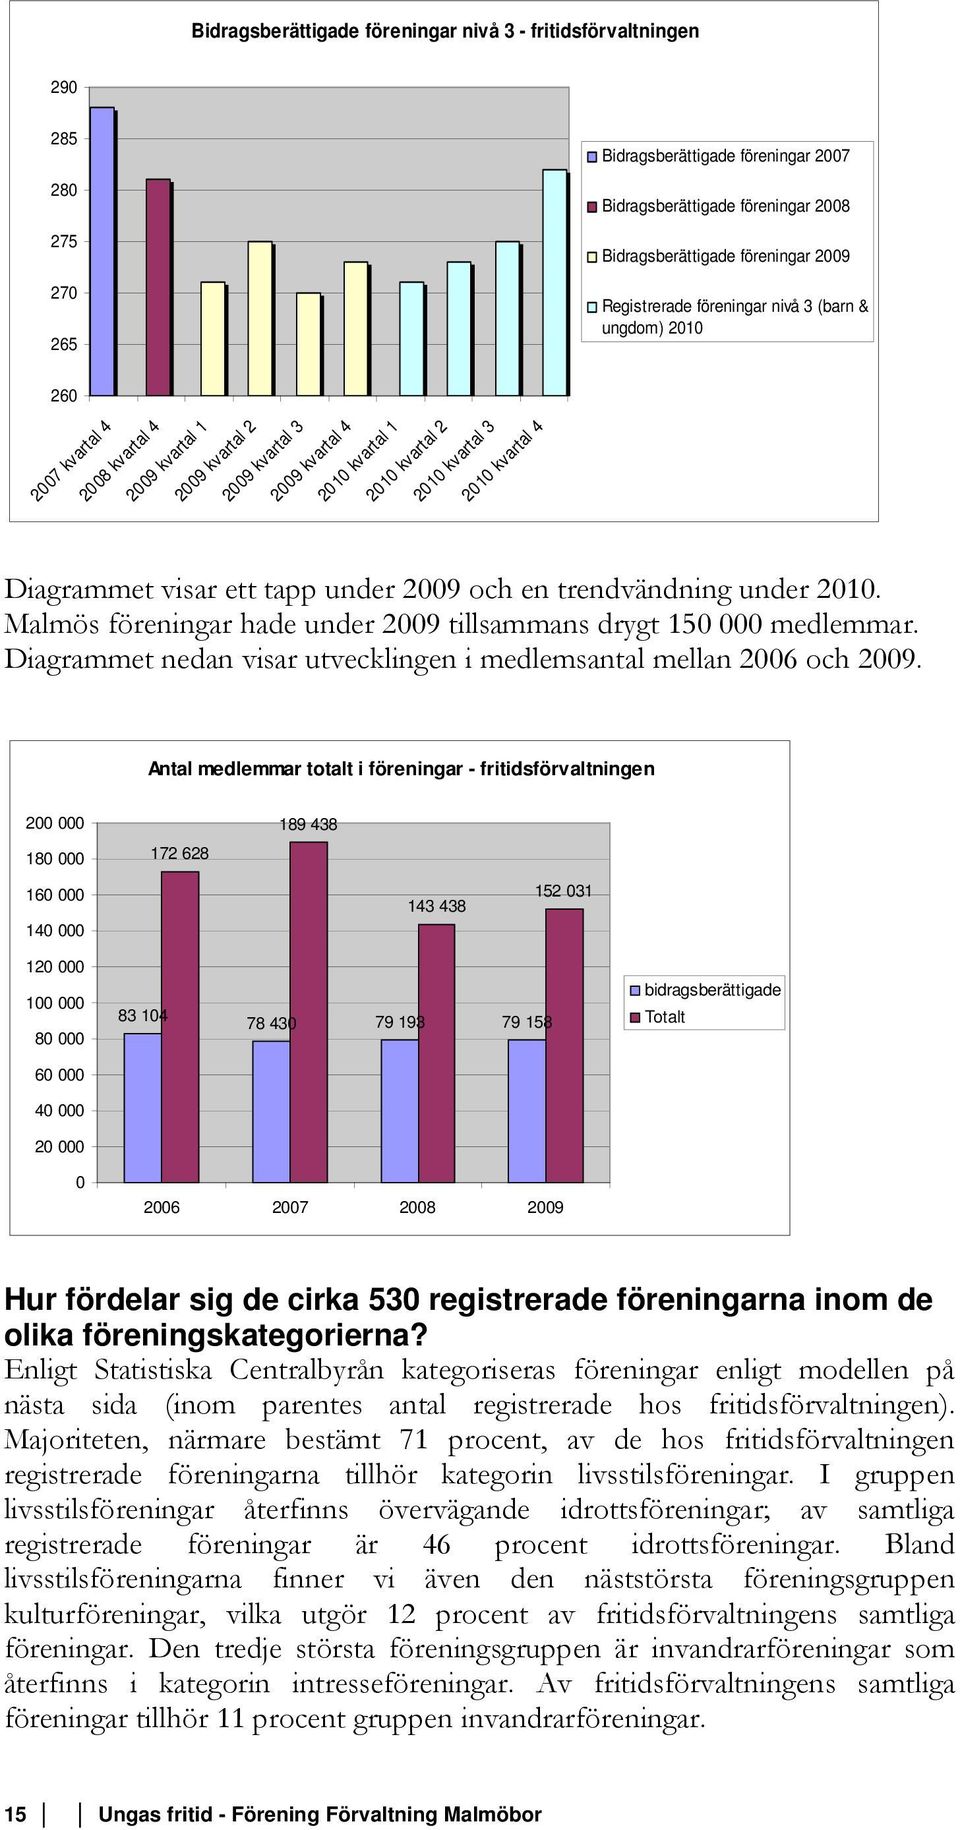 kvartal 4 Diagrammet visar ett tapp under 2009 och en trendvändning under 2010. Malmös föreningar hade under 2009 tillsammans drygt 150 000 medlemmar.